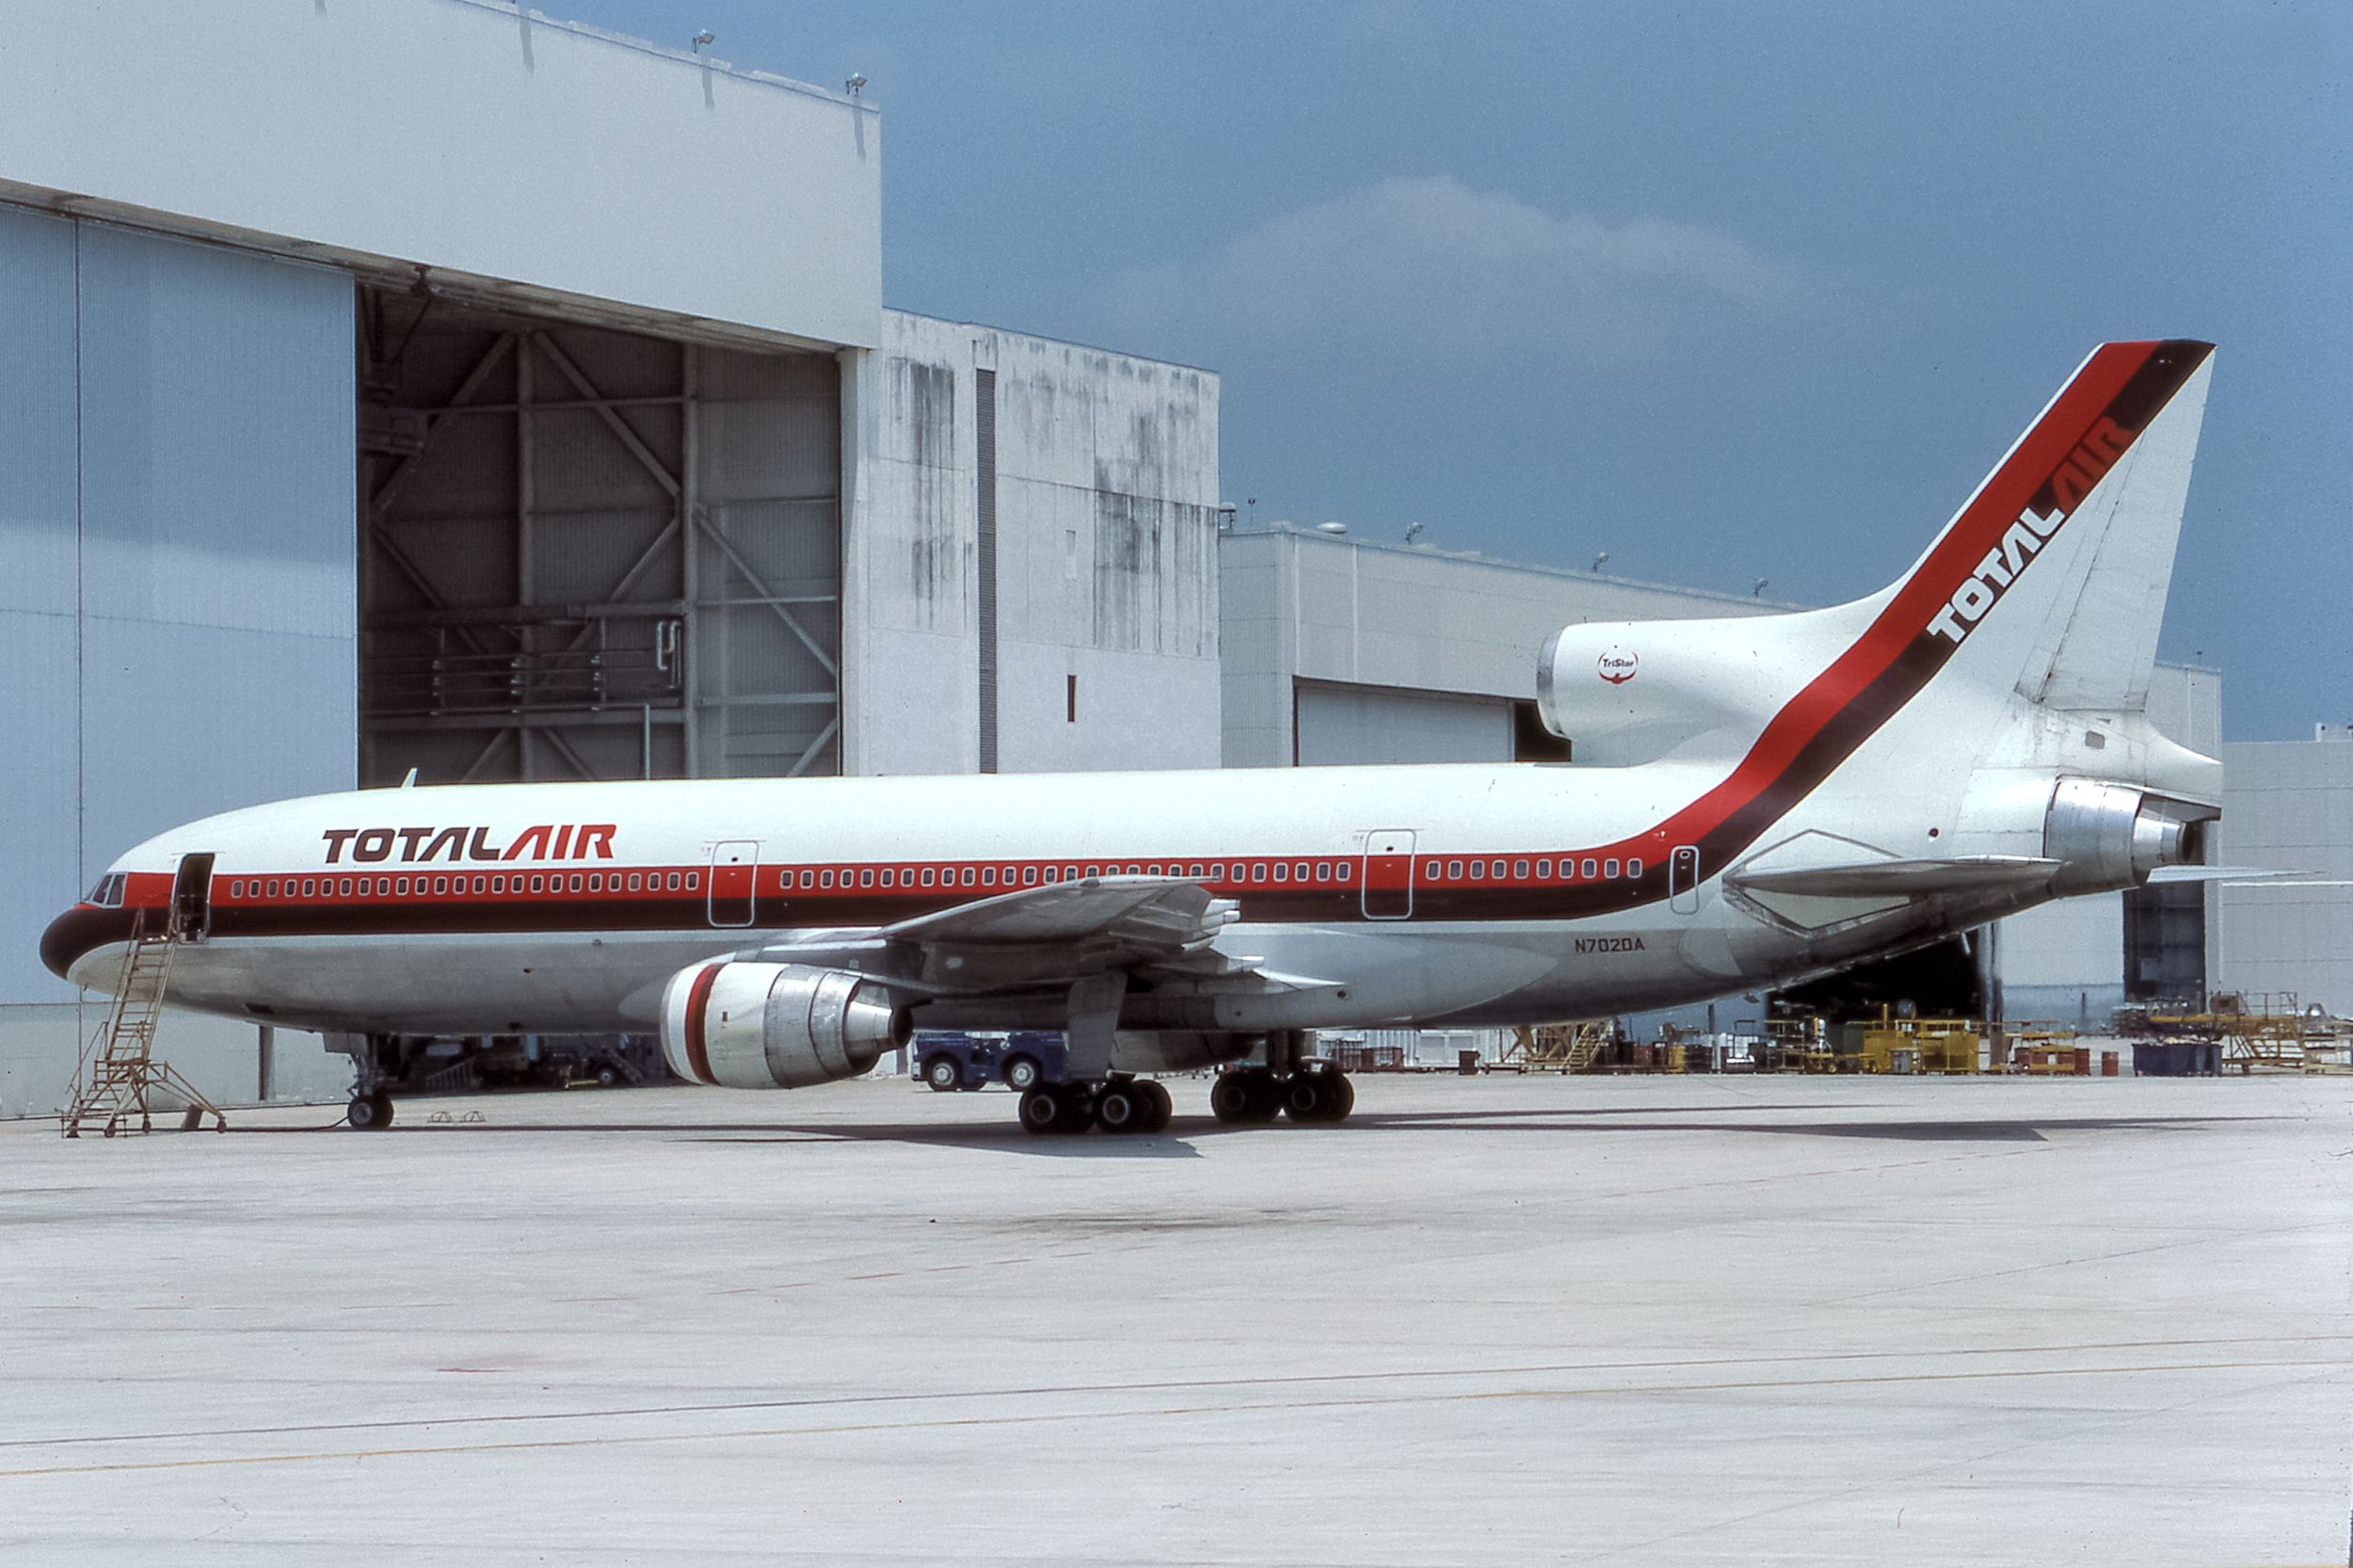 Total Air, N702DA, Martin 1985, Commercial aircraft, 2500x1670 HD Desktop